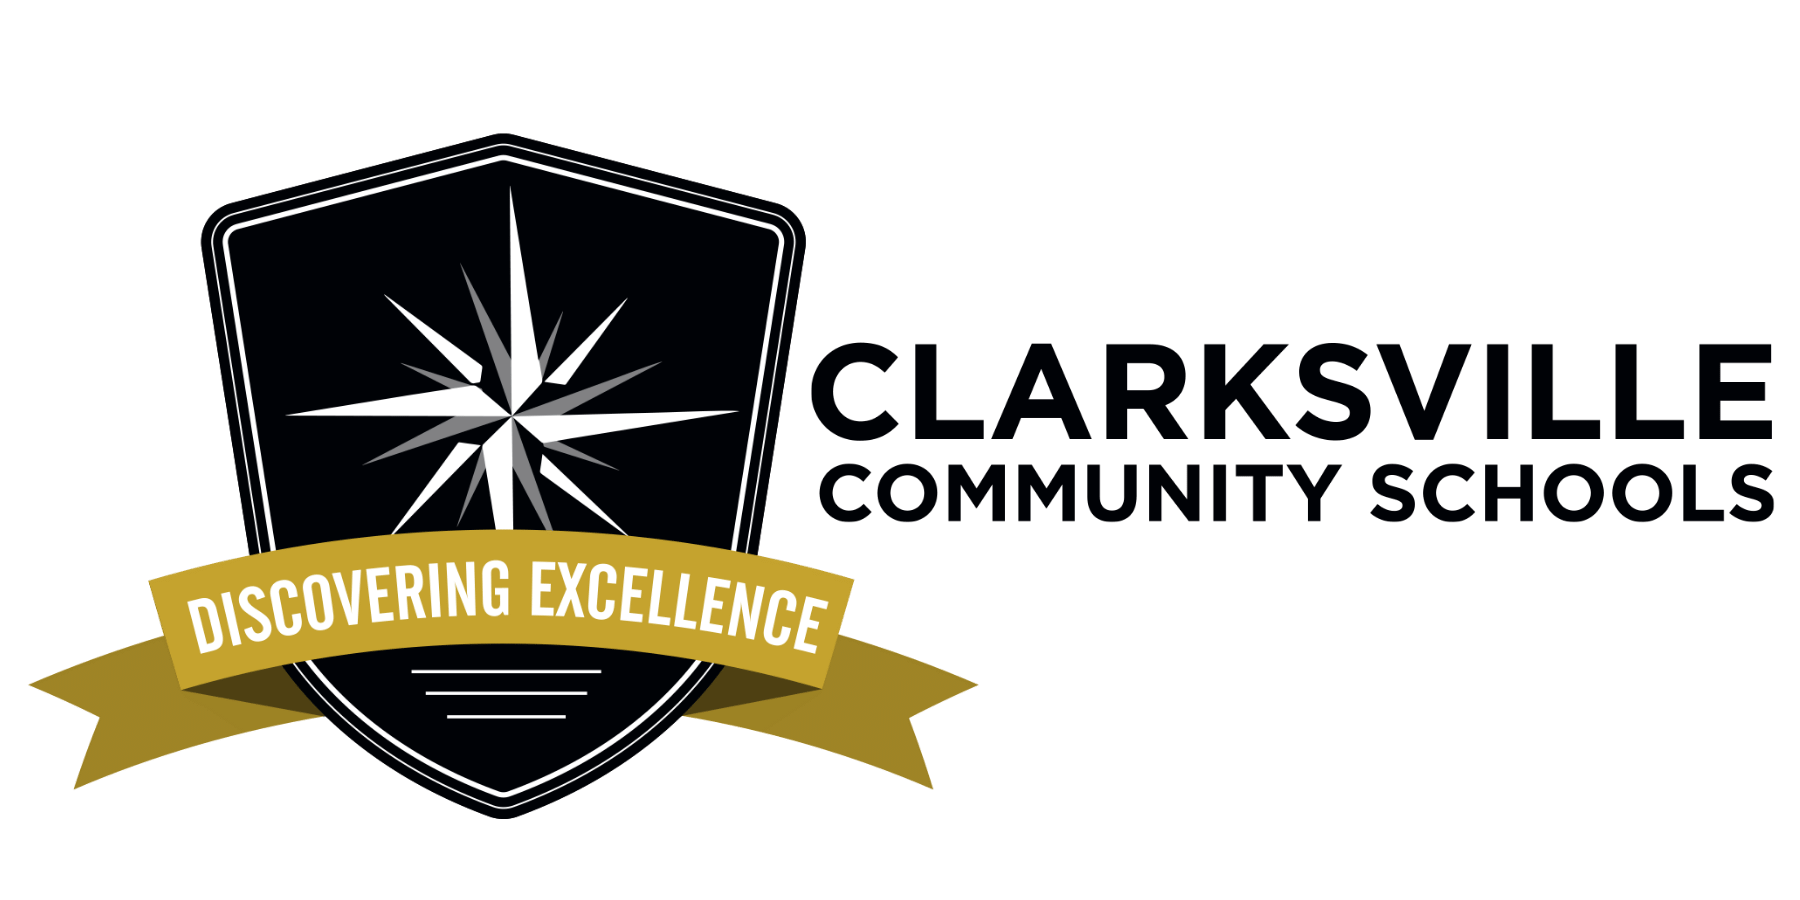 Clarksville Community Schools